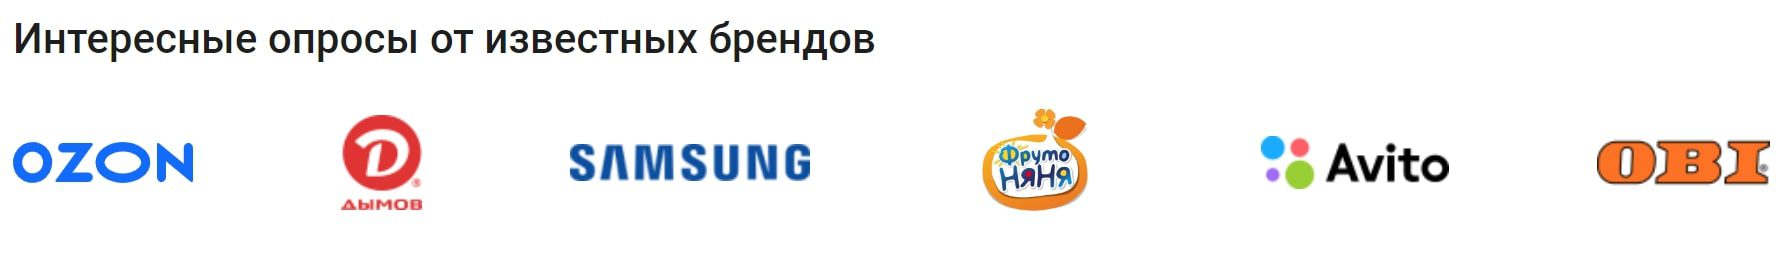 InternetOpros.ru бренды